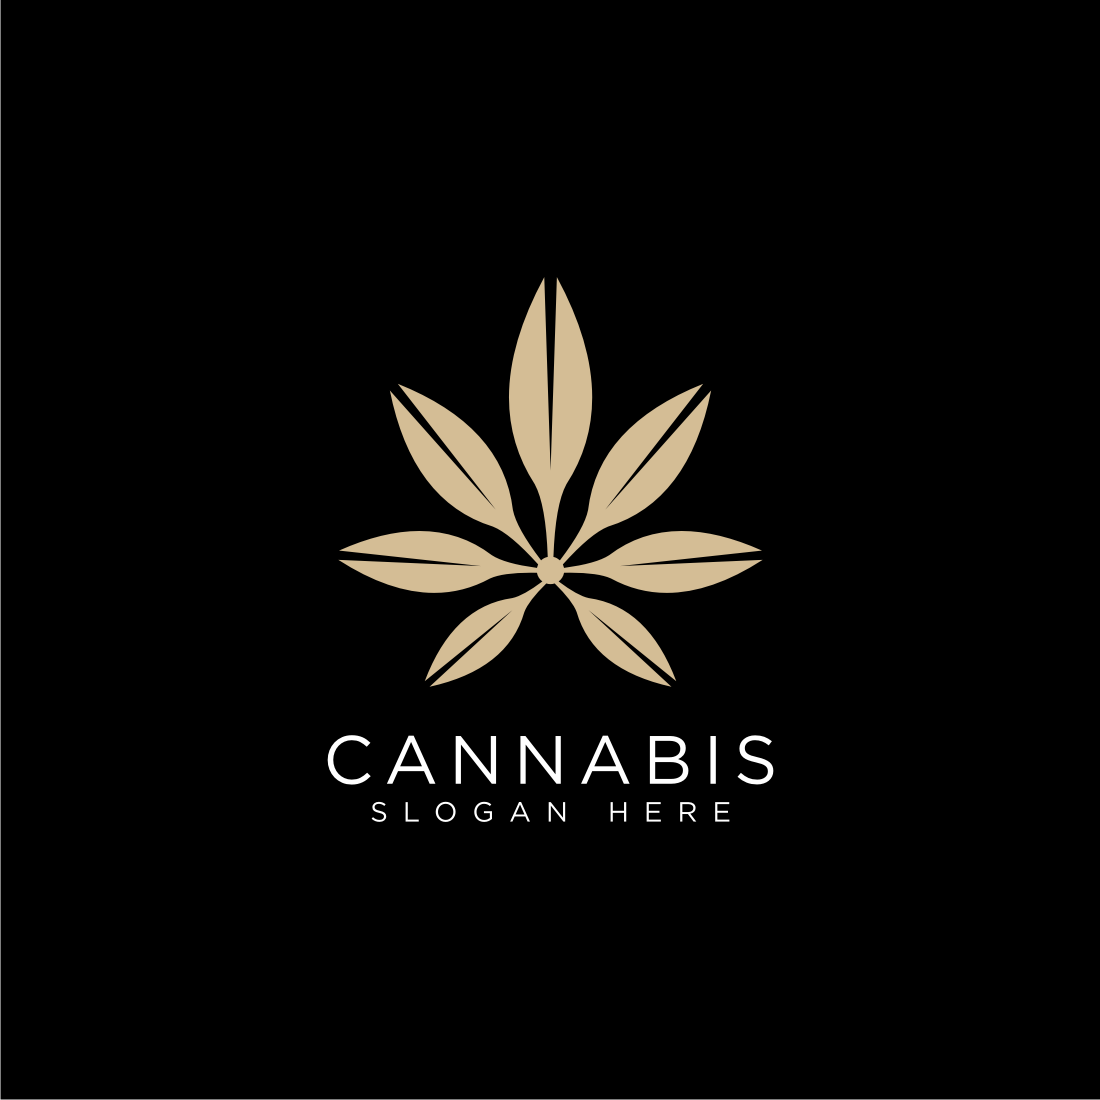 cannabis logo design vector cover image.